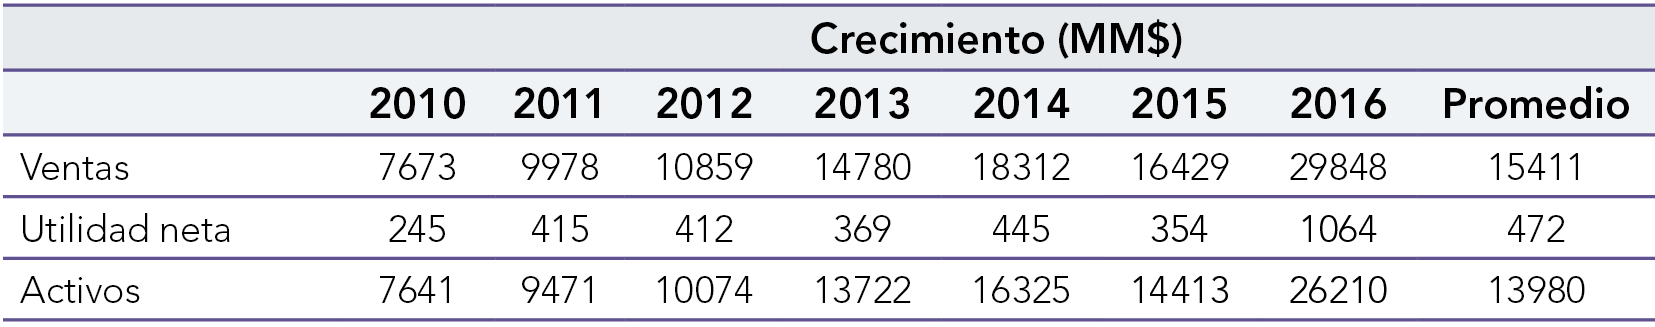 Activos, ventas y utilidad neta promedio de la ICCM en Colombia